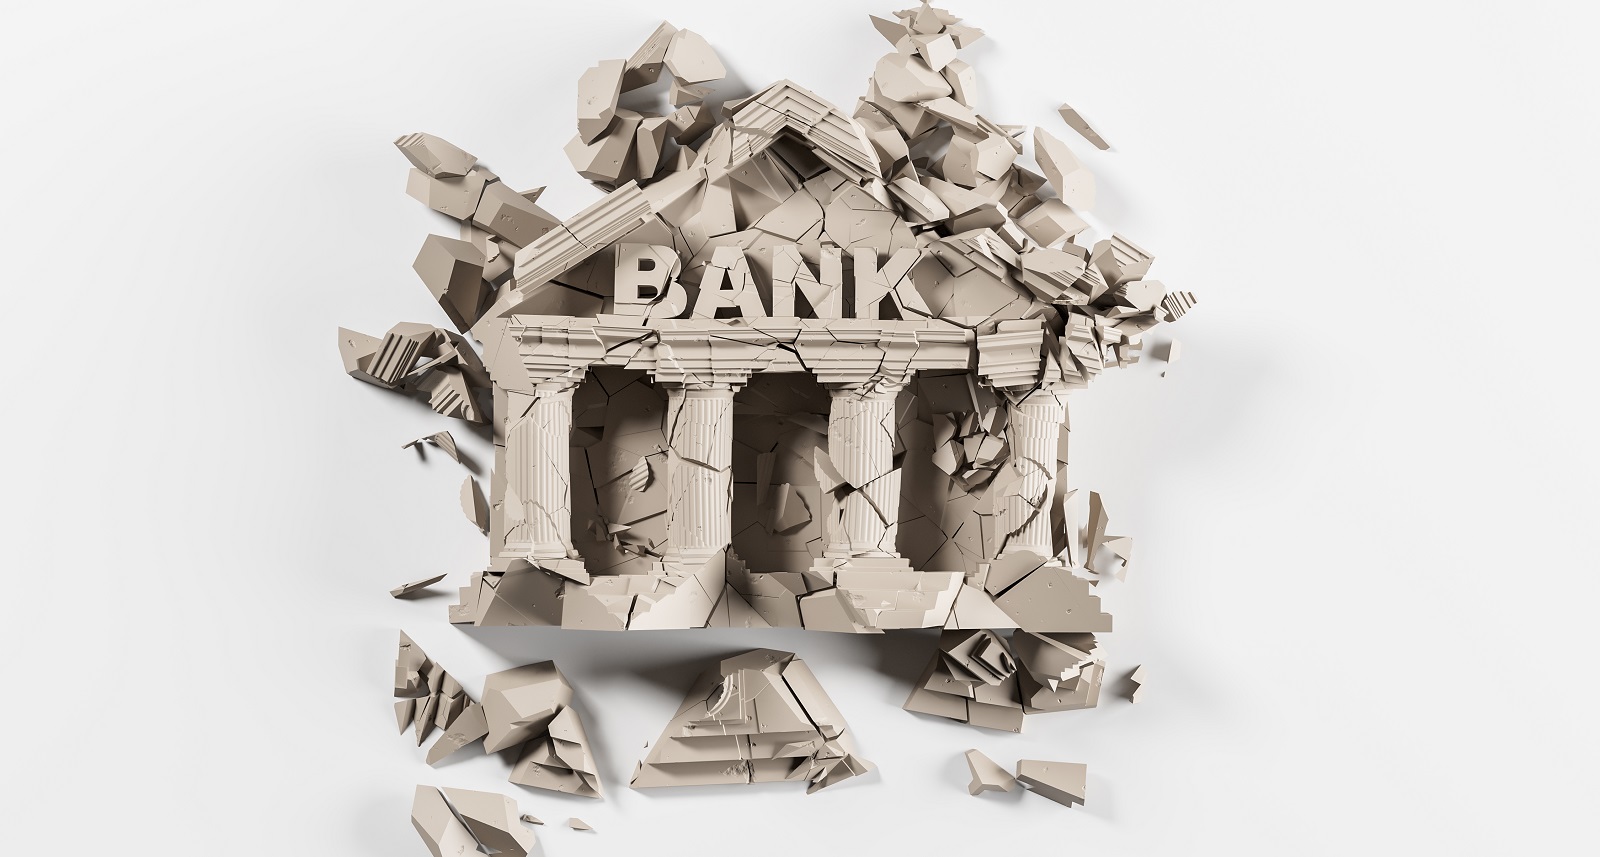 Tentang Penyertaan Modal Sementara Bank dalam Rangka Restrukturisasi Utang